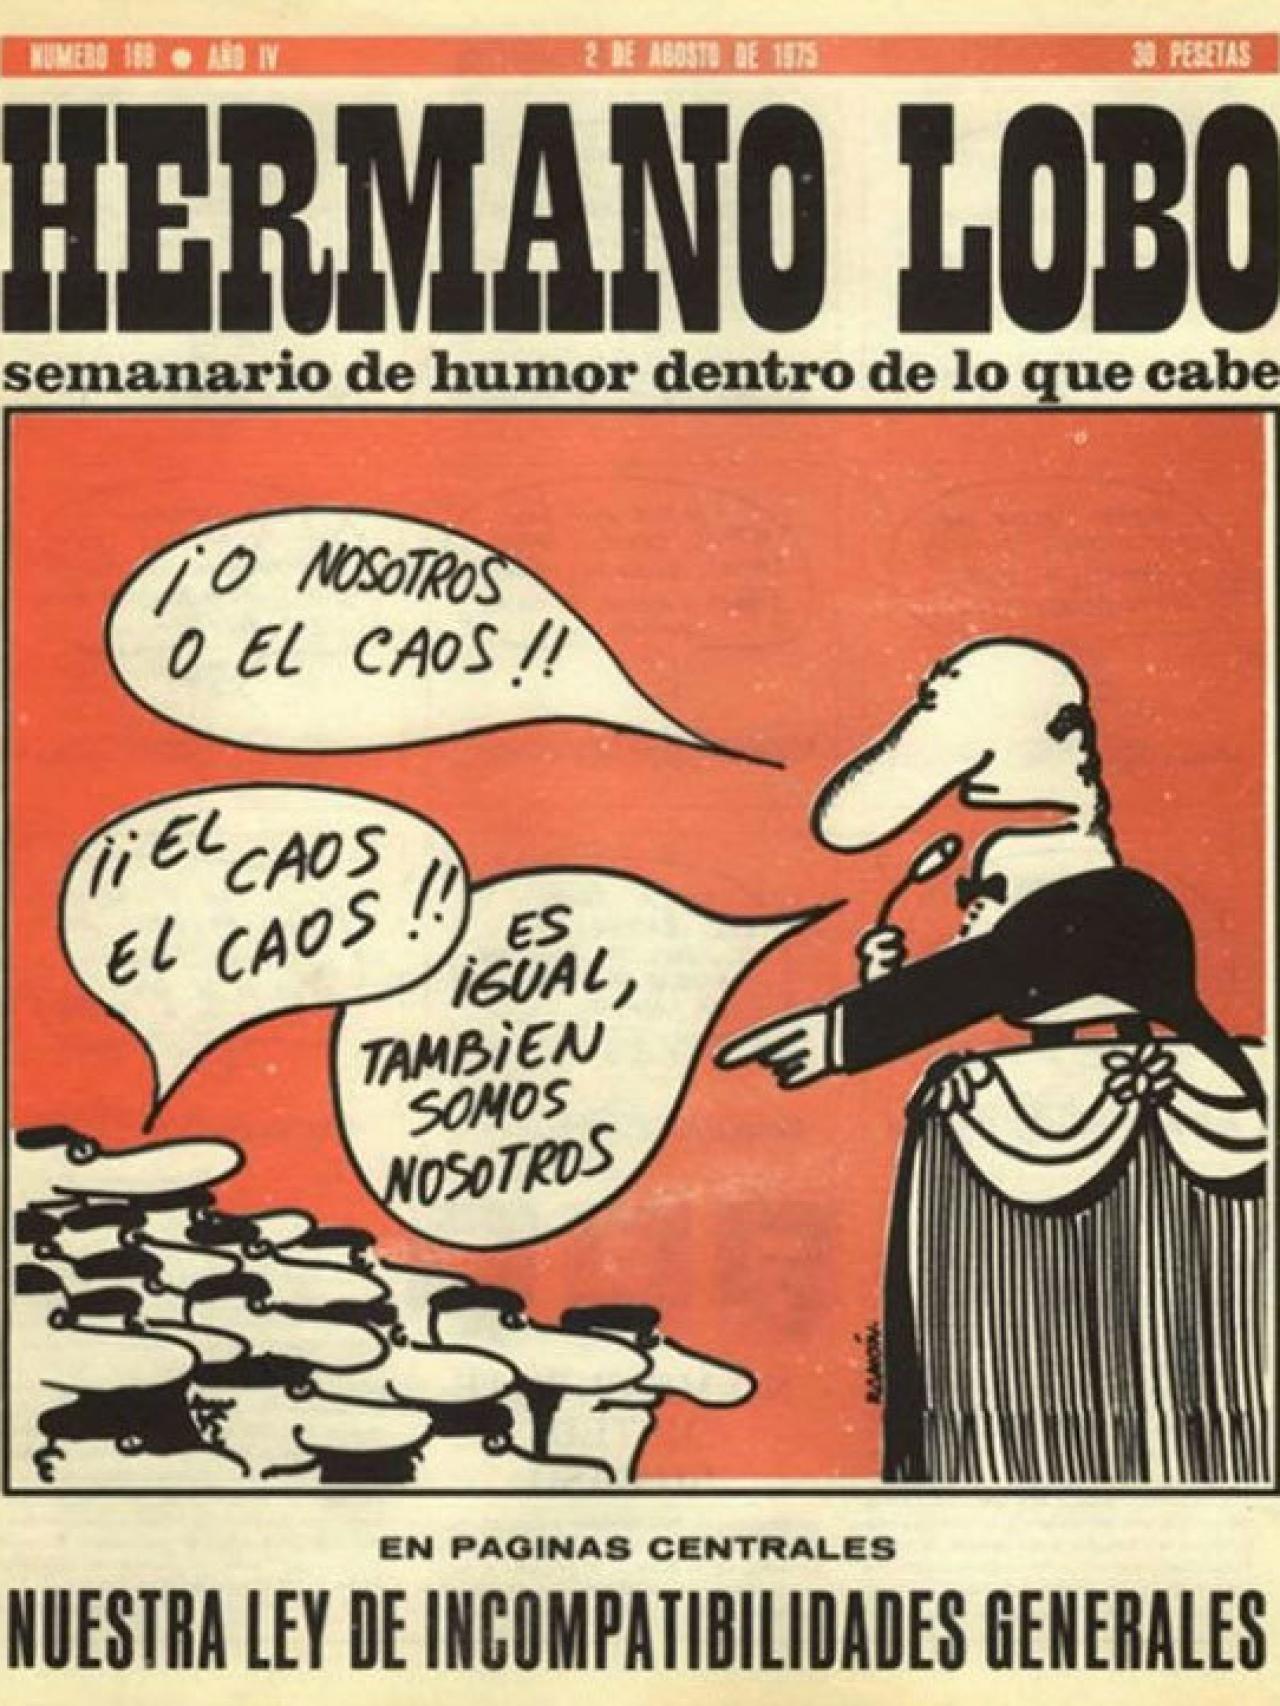 Portada de la revista de humor Hermano Lobo del 2 de agosto de 1975.